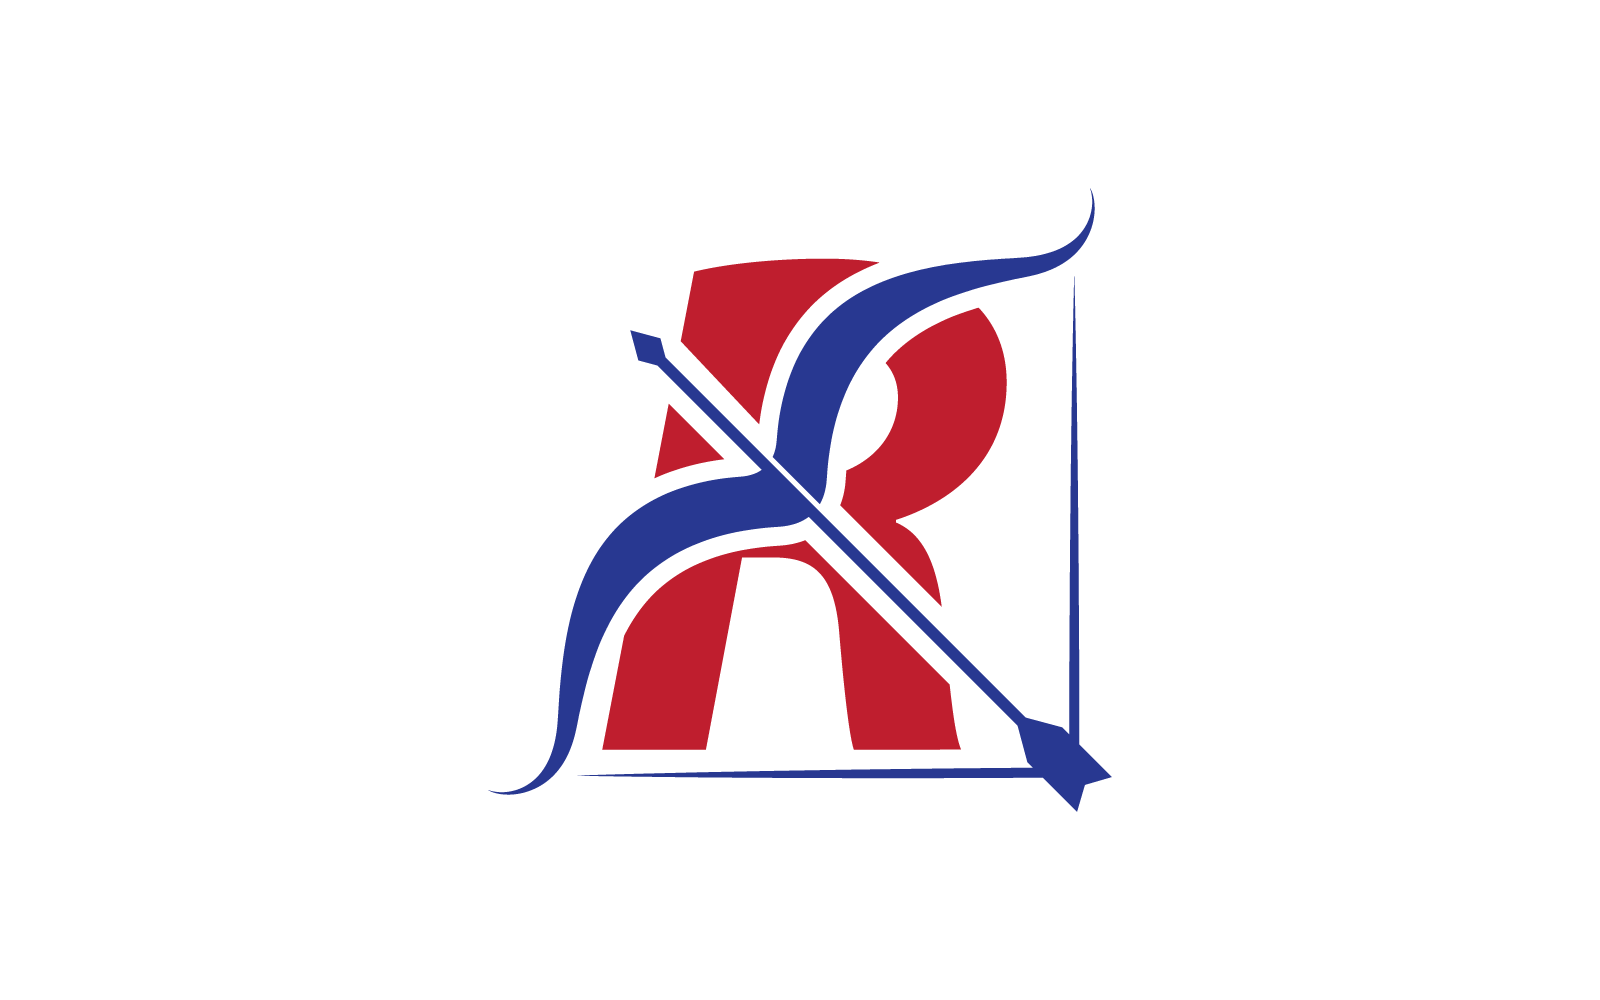 Bogenschießen-Logo mit R-Anfangsbuchstaben, Vektorillustration, flaches Design